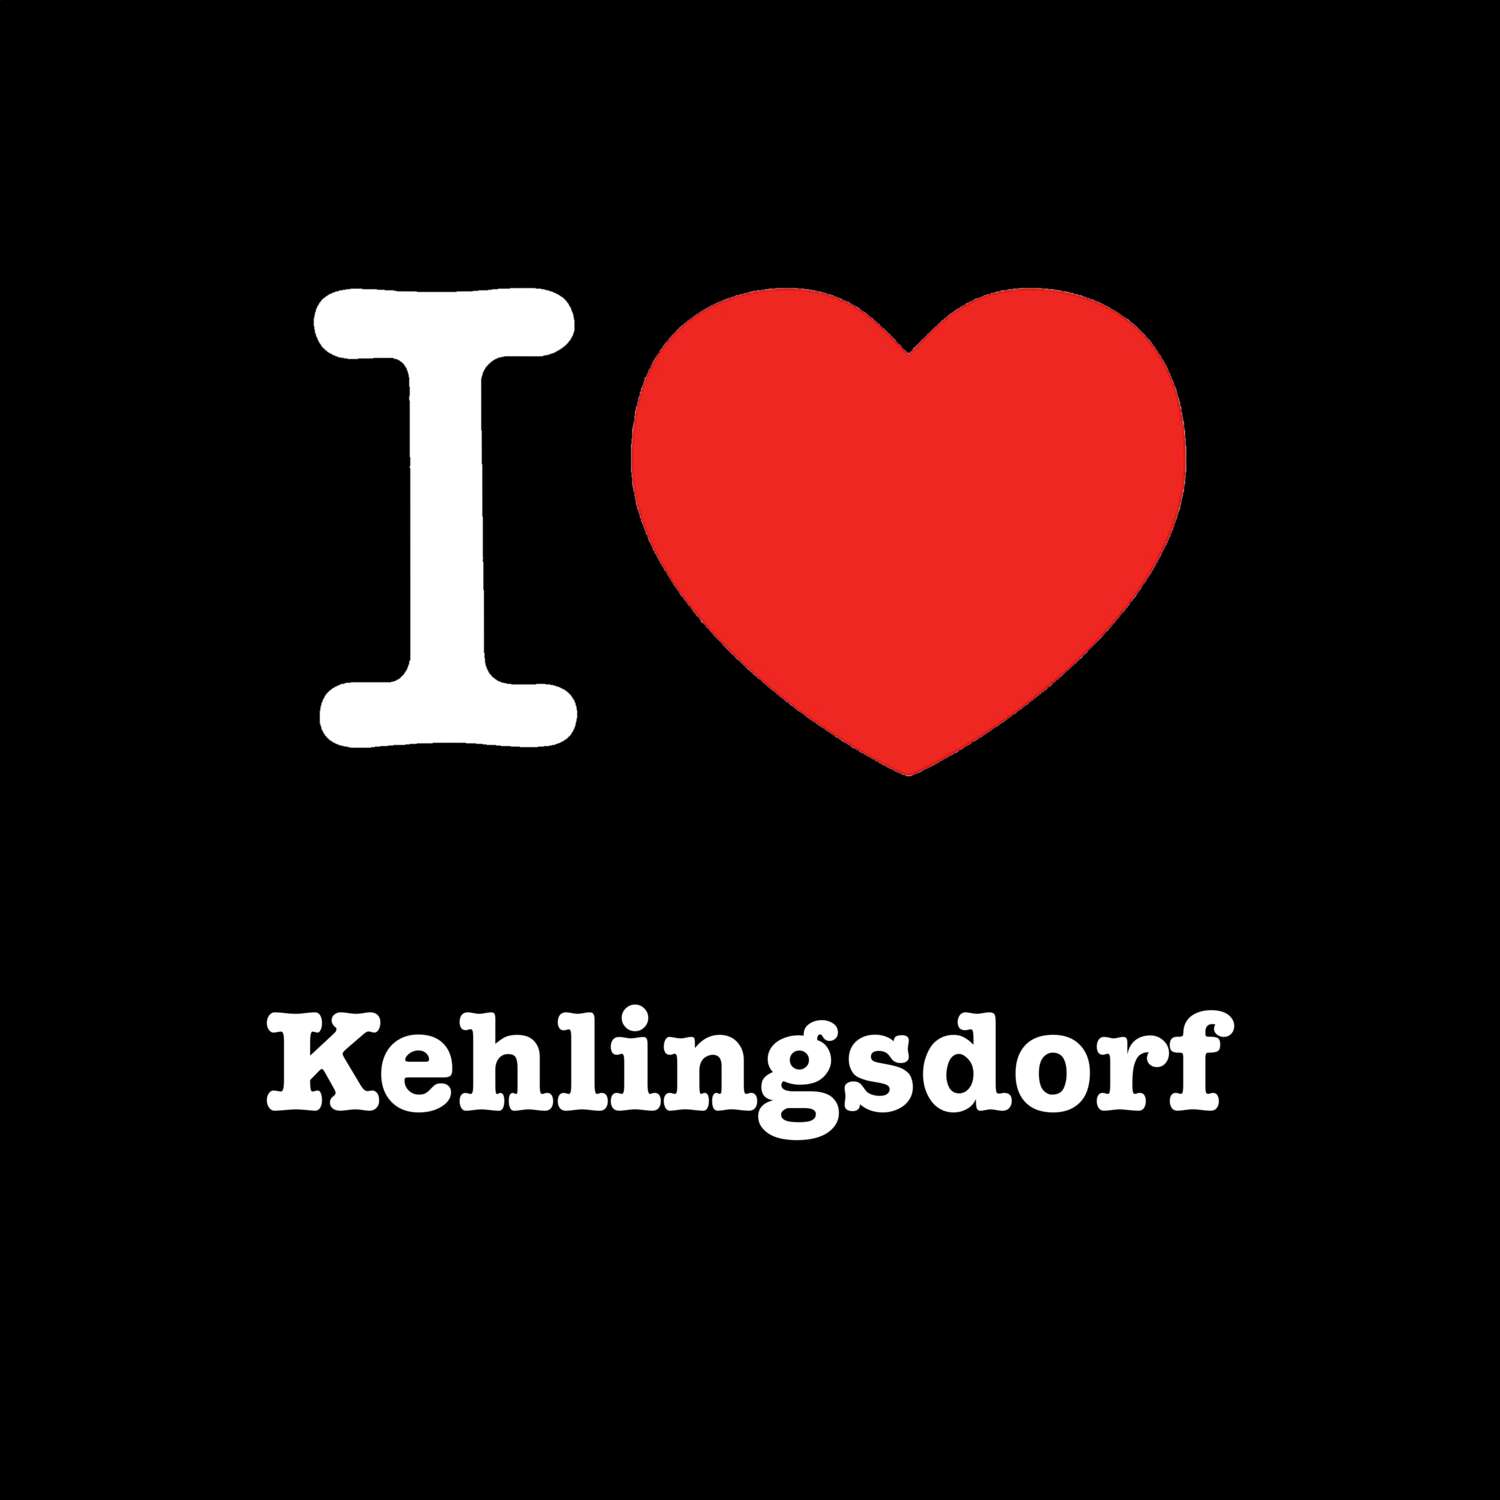 Kehlingsdorf T-Shirt »I love«